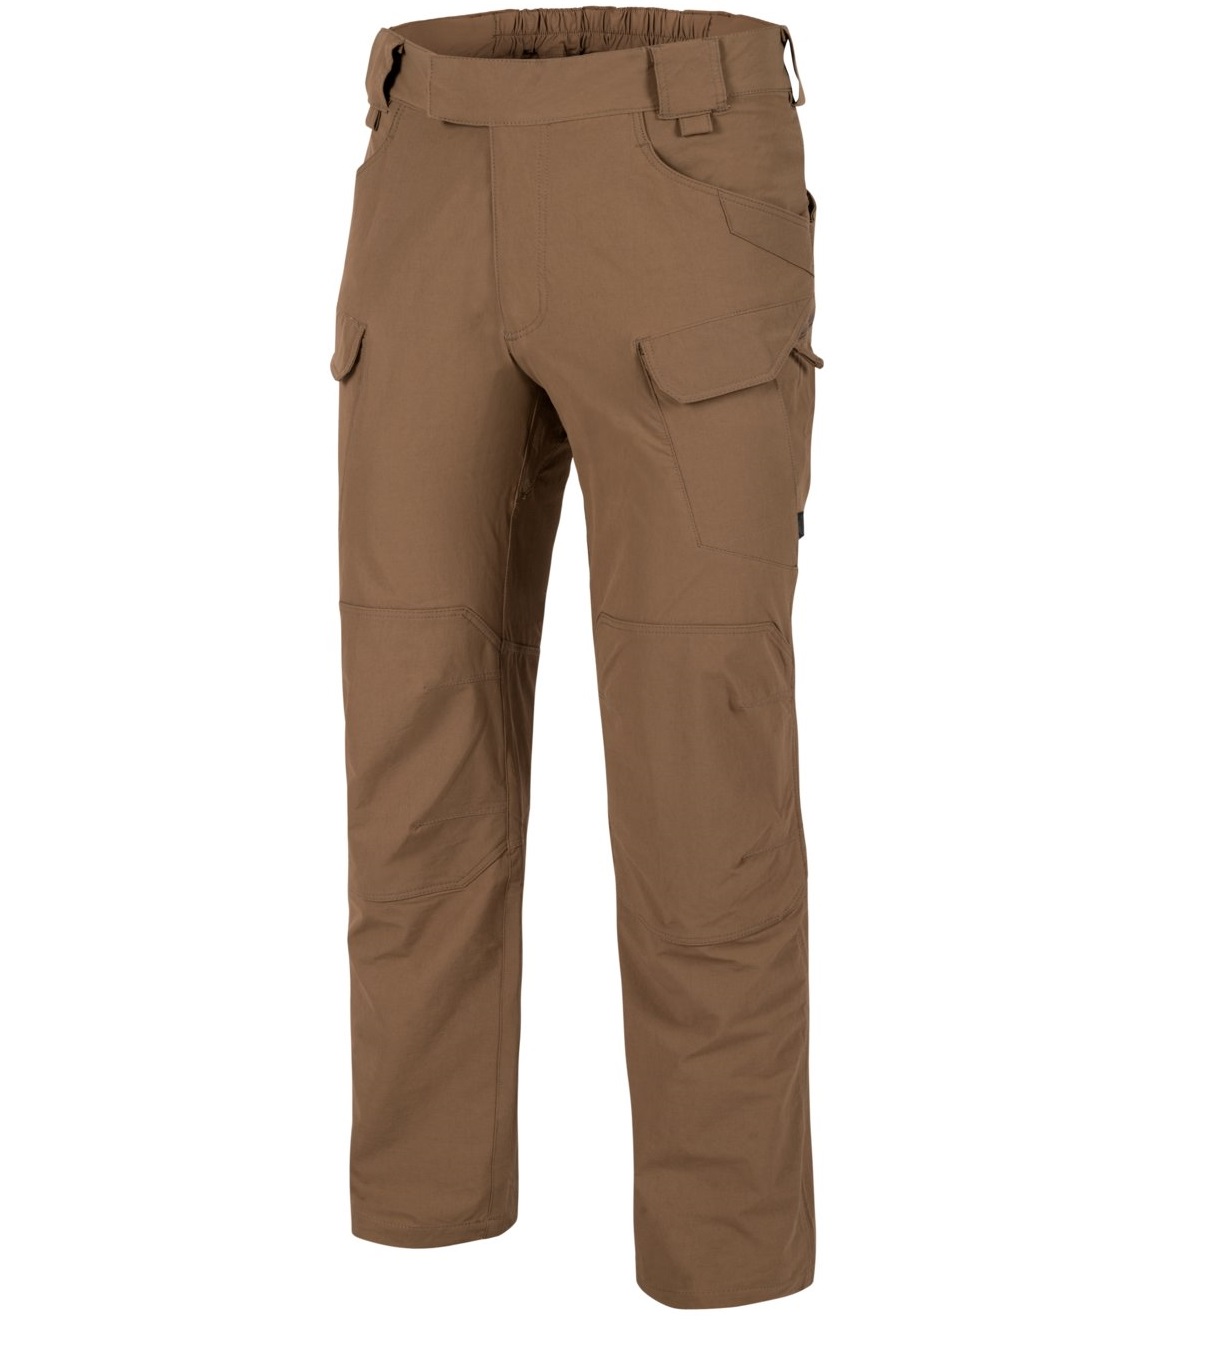 Spodnie Helikon-Tex OTP Nylon mud brown